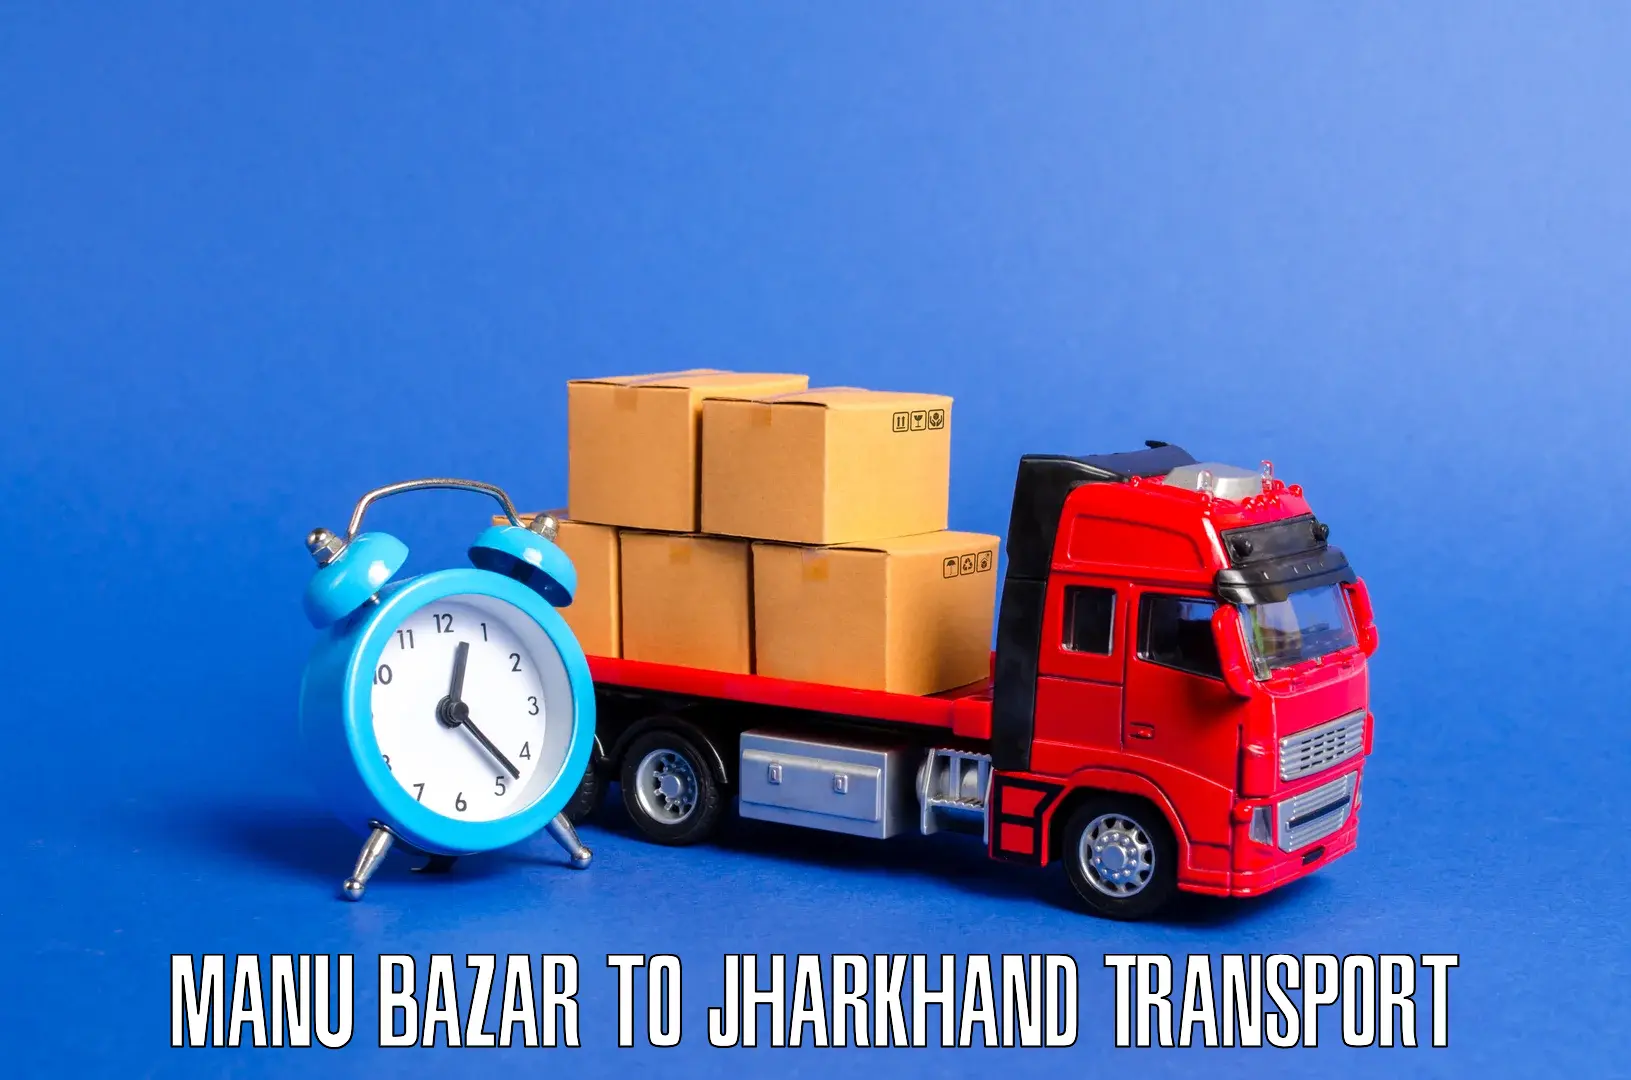 Express transport services Manu Bazar to Nagar Untari